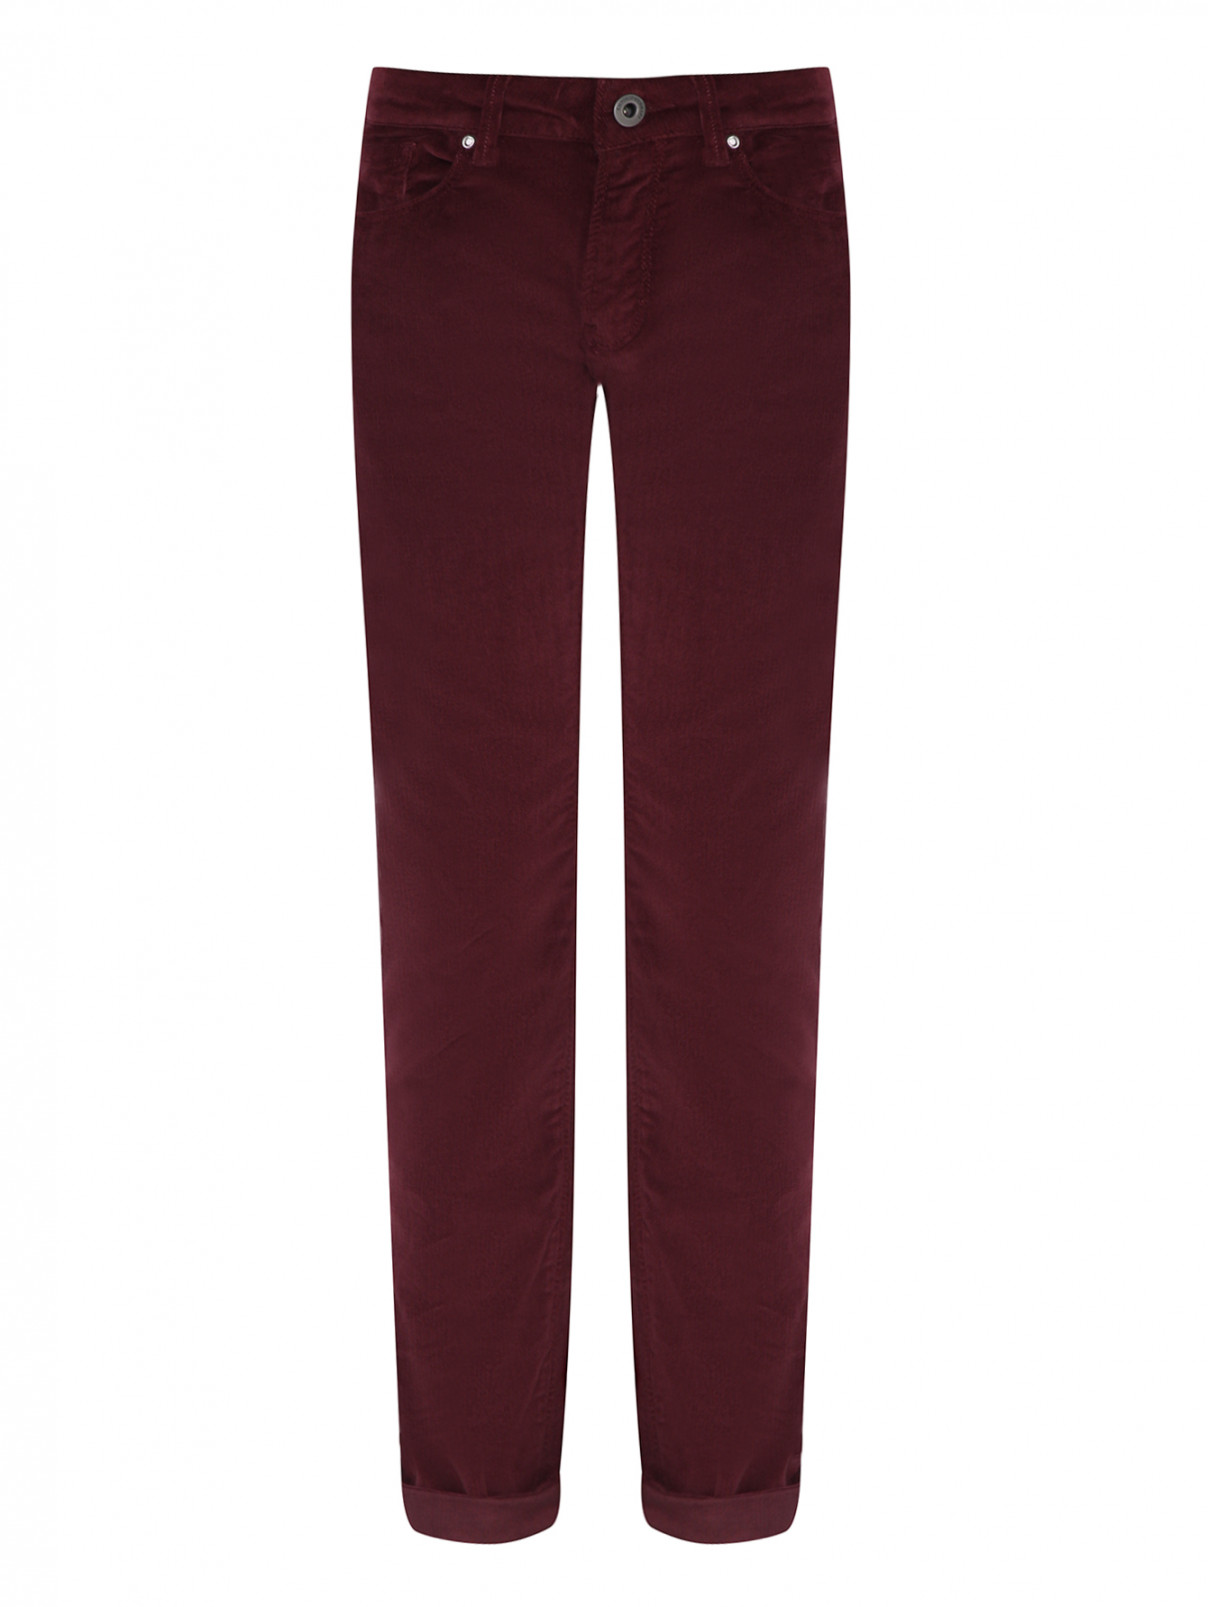 Вельветовые брюки с карманами Emporio Armani  –  Общий вид  – Цвет:  Красный